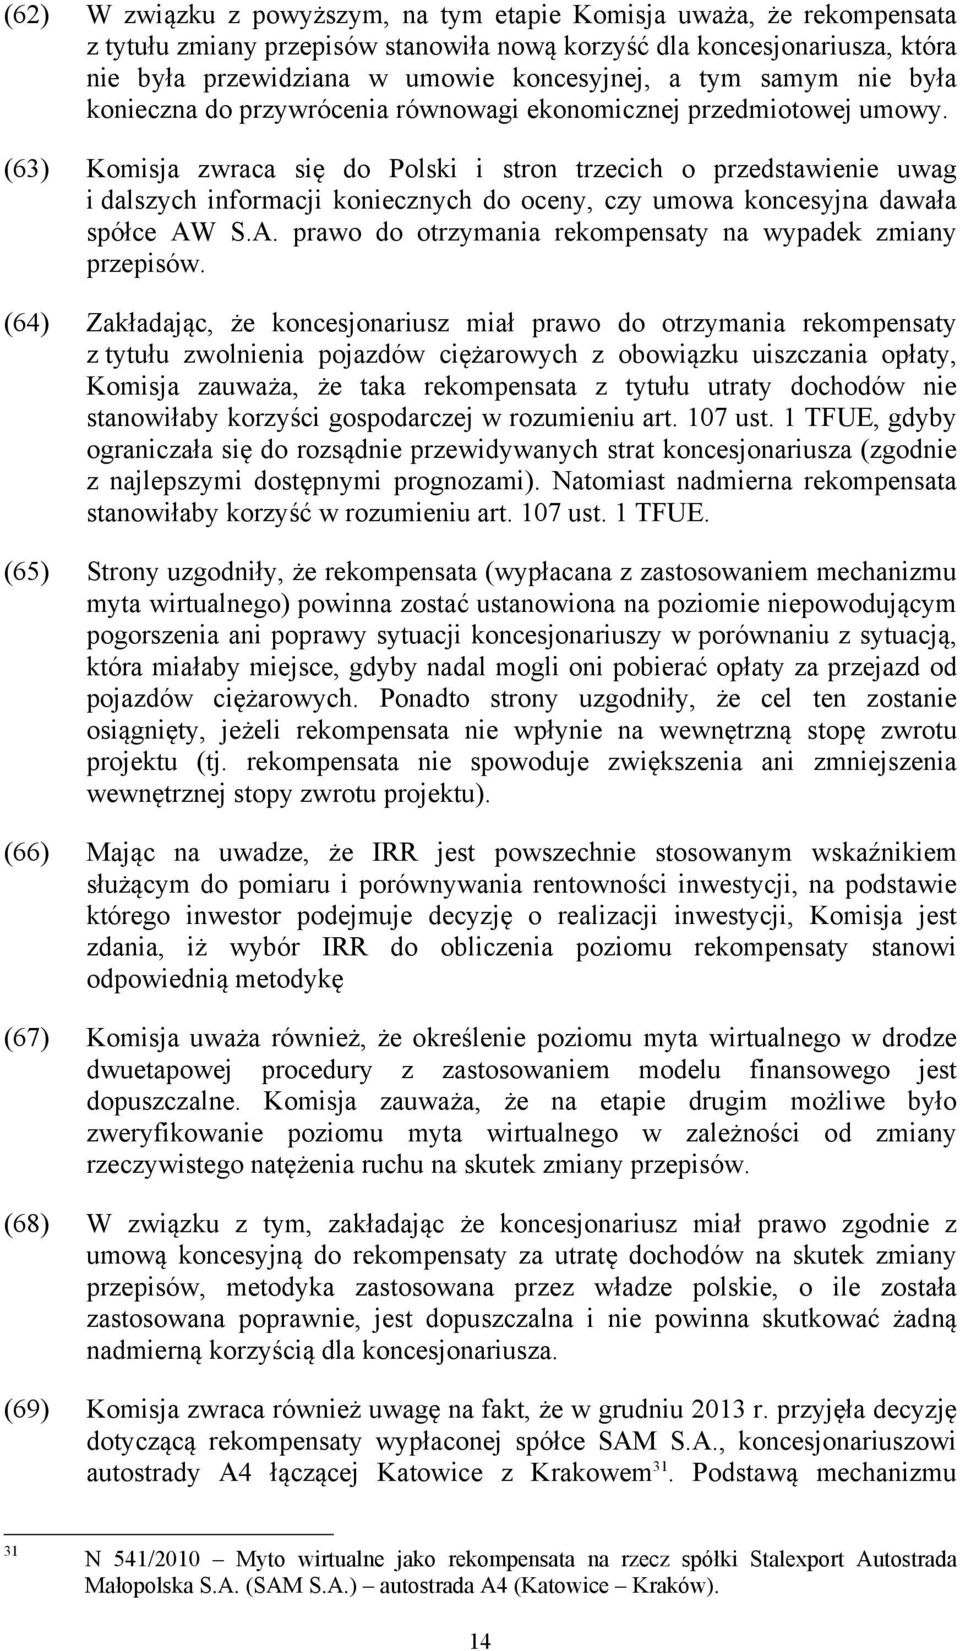 (63) Komisja zwraca się do Polski i stron trzecich o przedstawienie uwag i dalszych informacji koniecznych do oceny, czy umowa koncesyjna dawała spółce AW